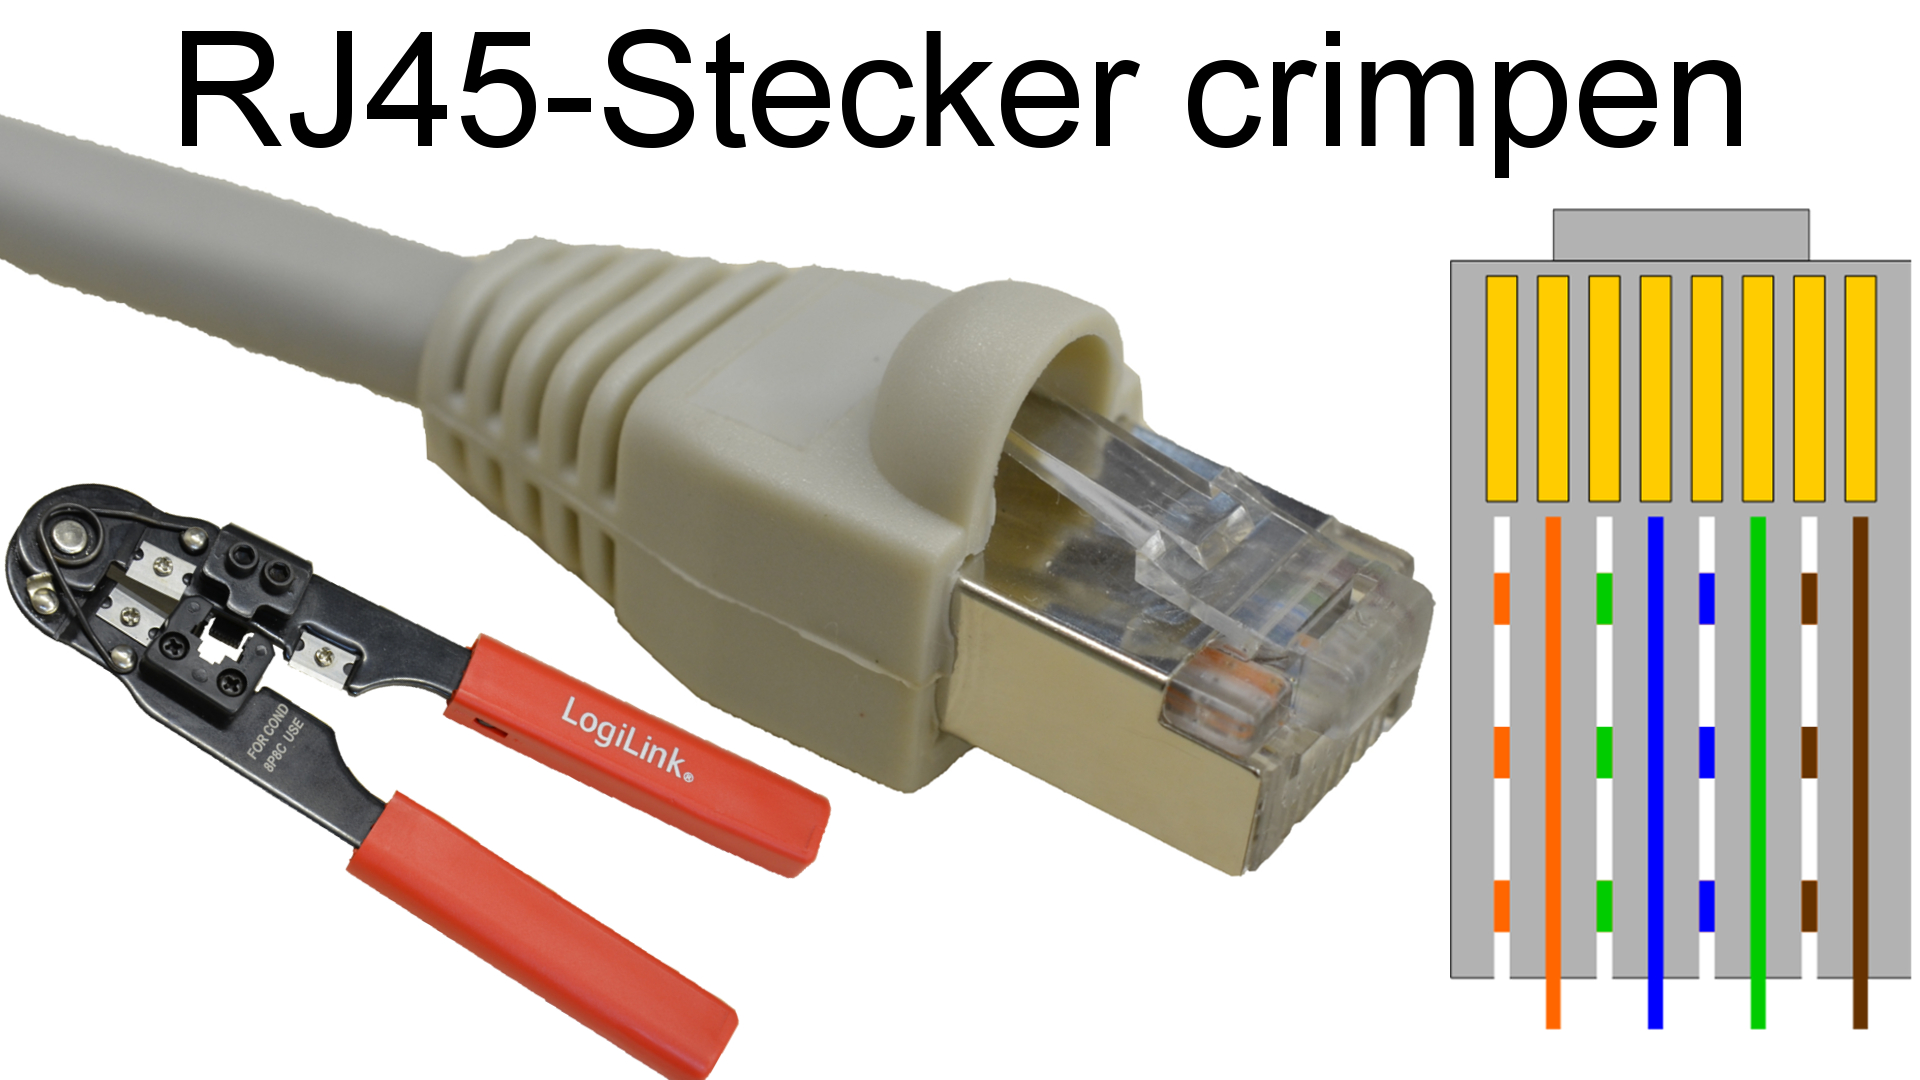 rj45-stecker-tumbnail